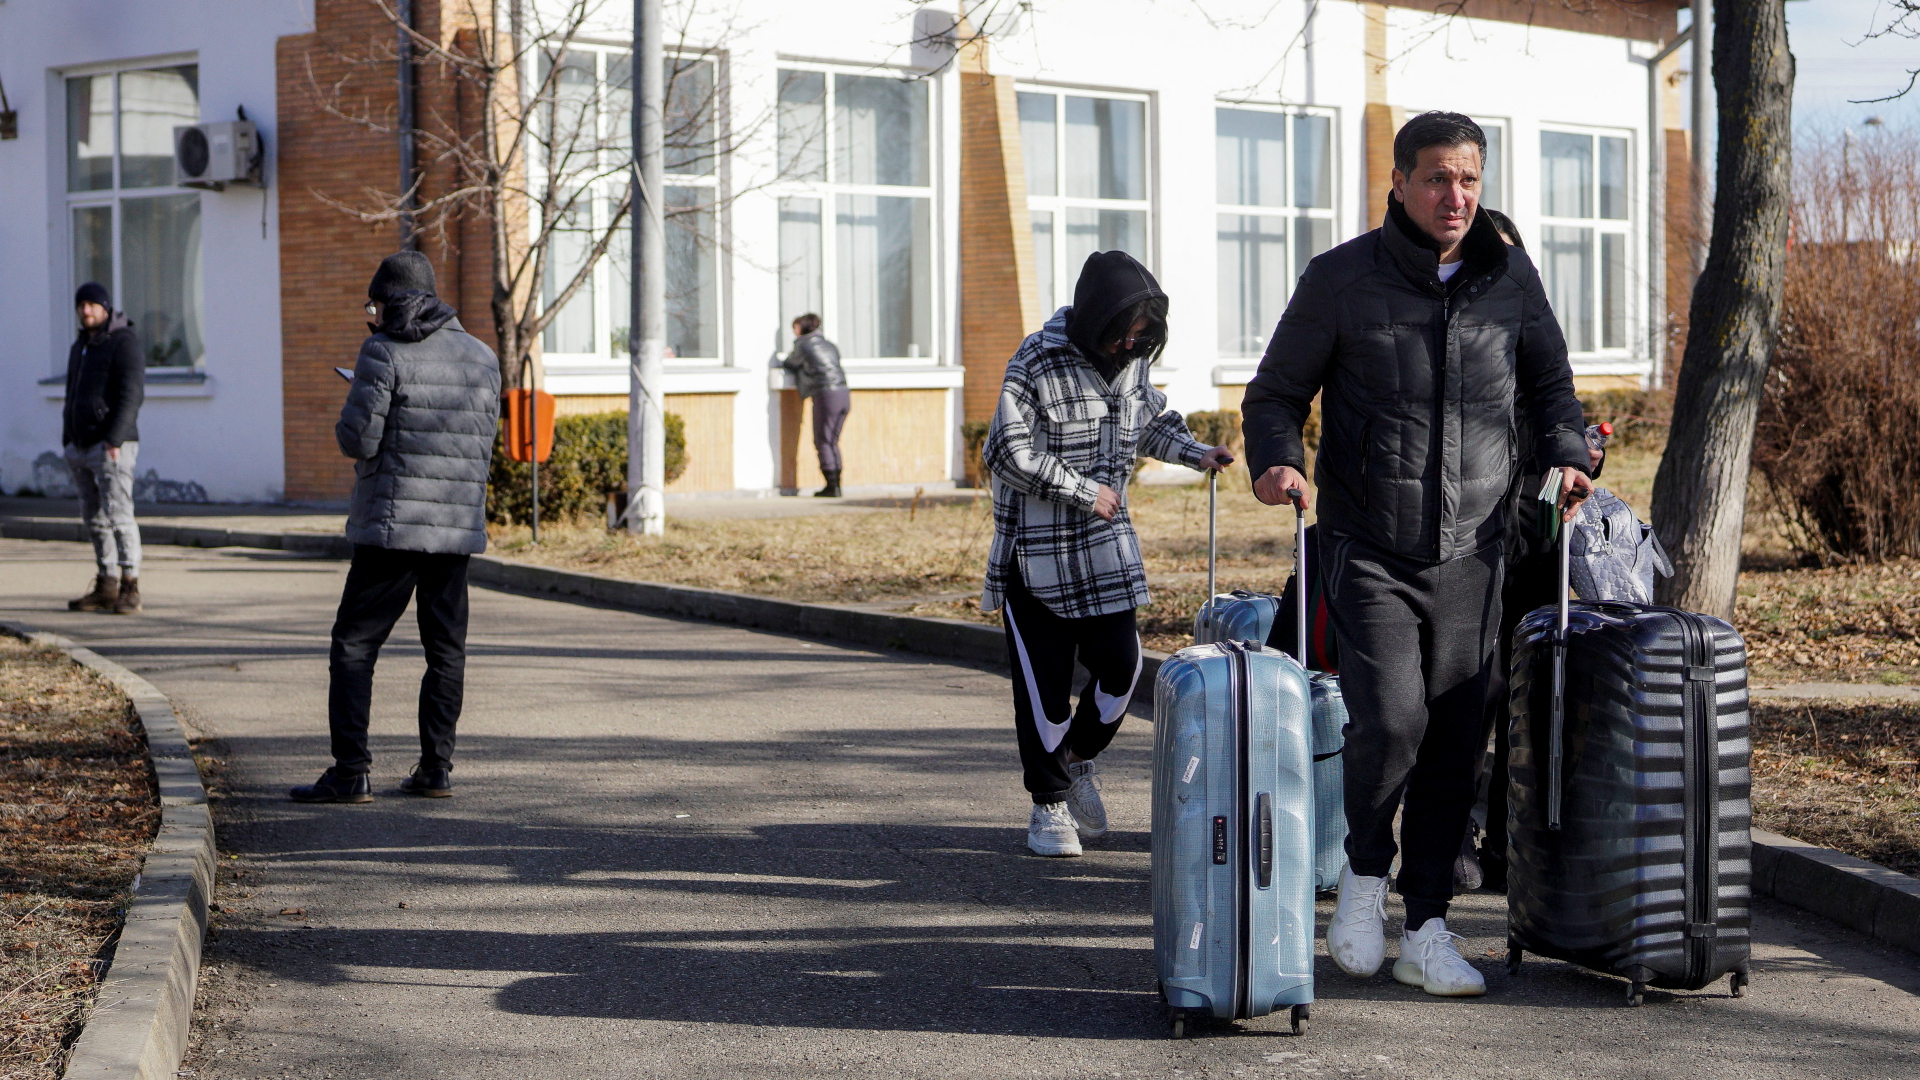 Ukrainische Flüchtlinge überqueren die Grenze nach Rumänien | via REUTERS